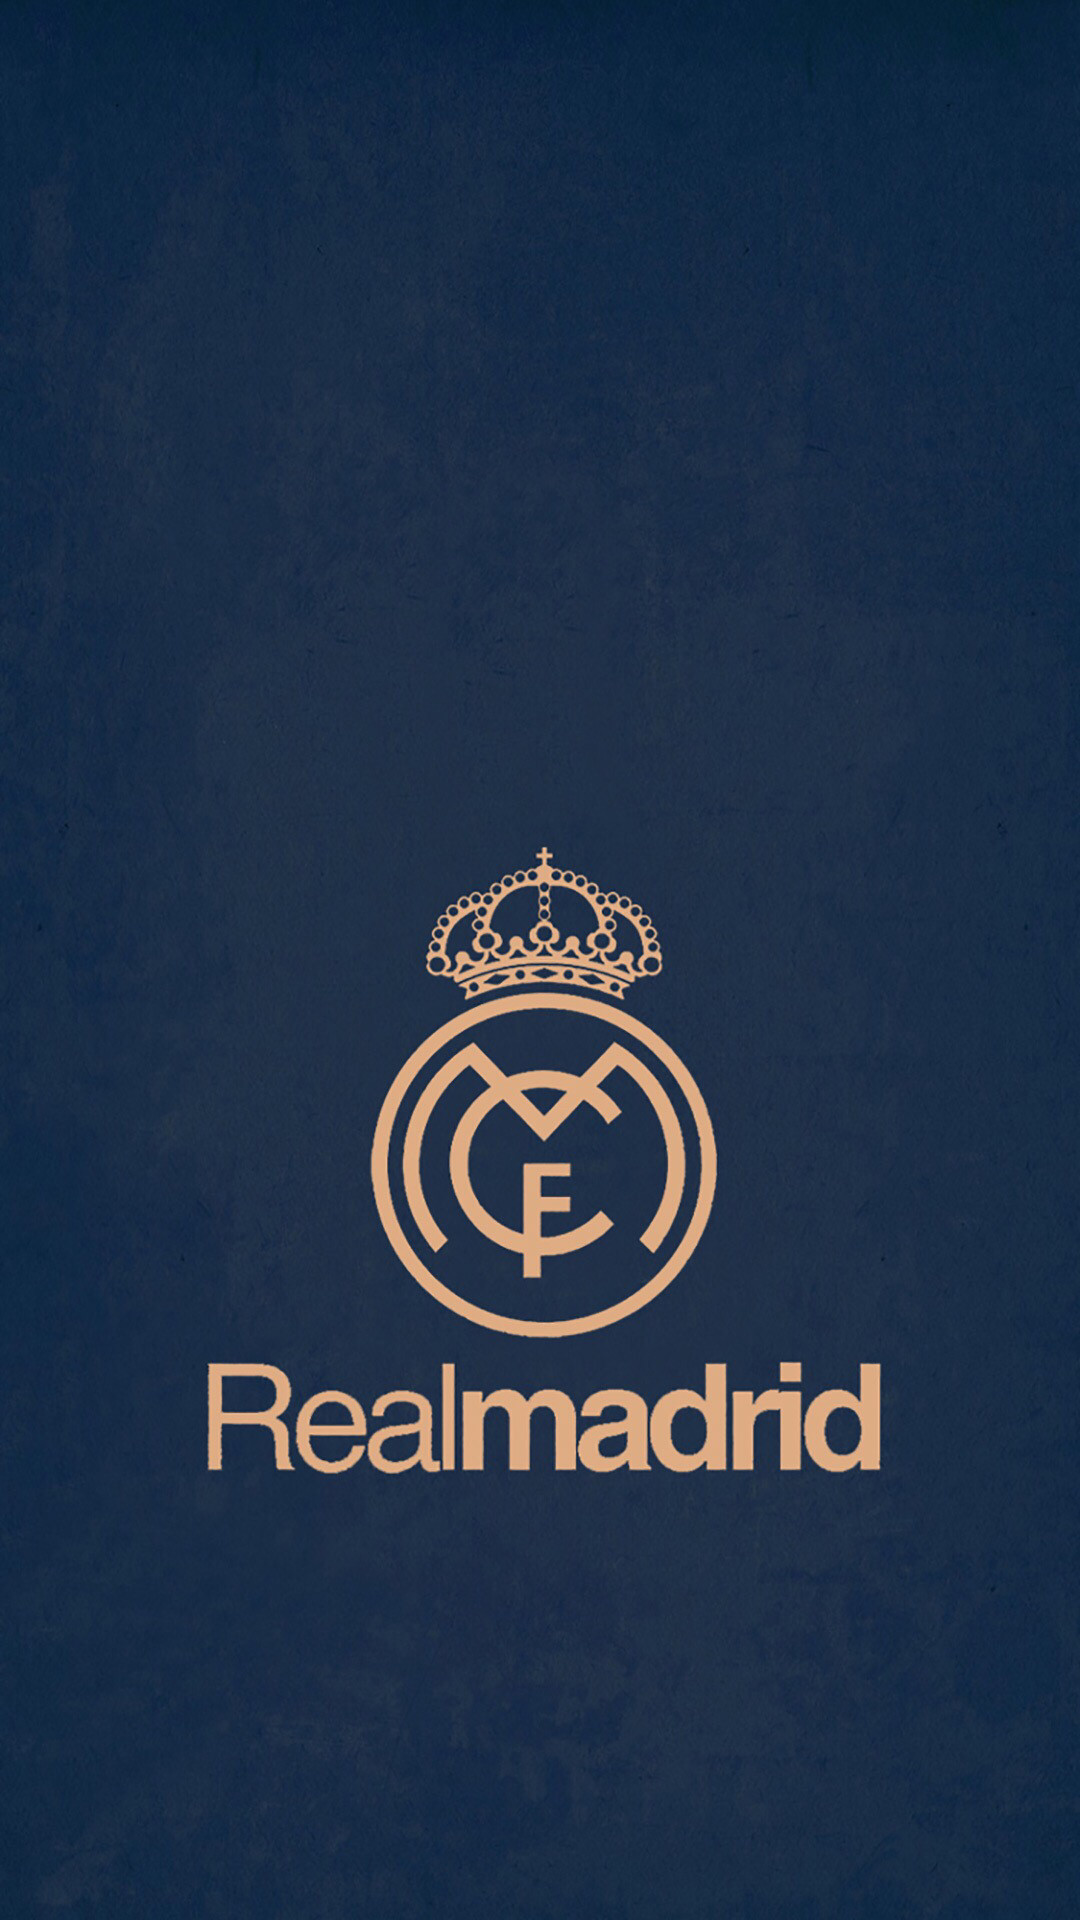 New Real Madrid Wallpaper Android Google Kezanaricom